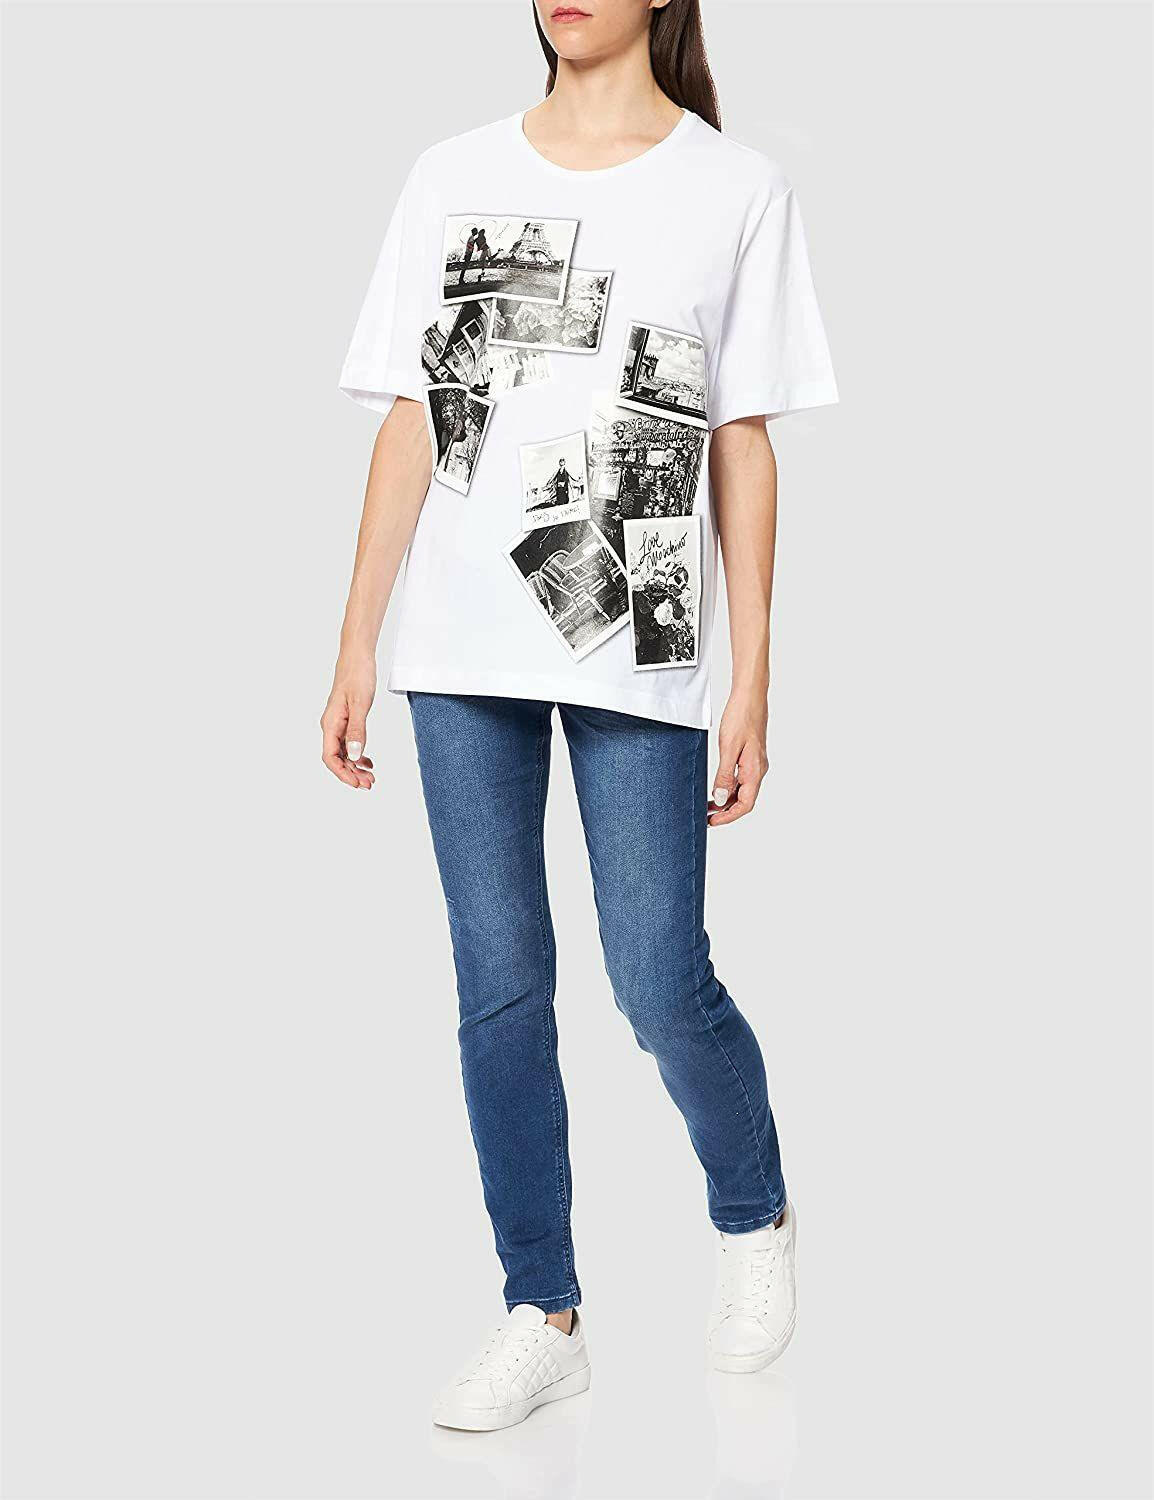 Love Moschino White Cotton Tops & T-Shirt Love Moschino GENUINE AUTHENTIC BRAND LLC